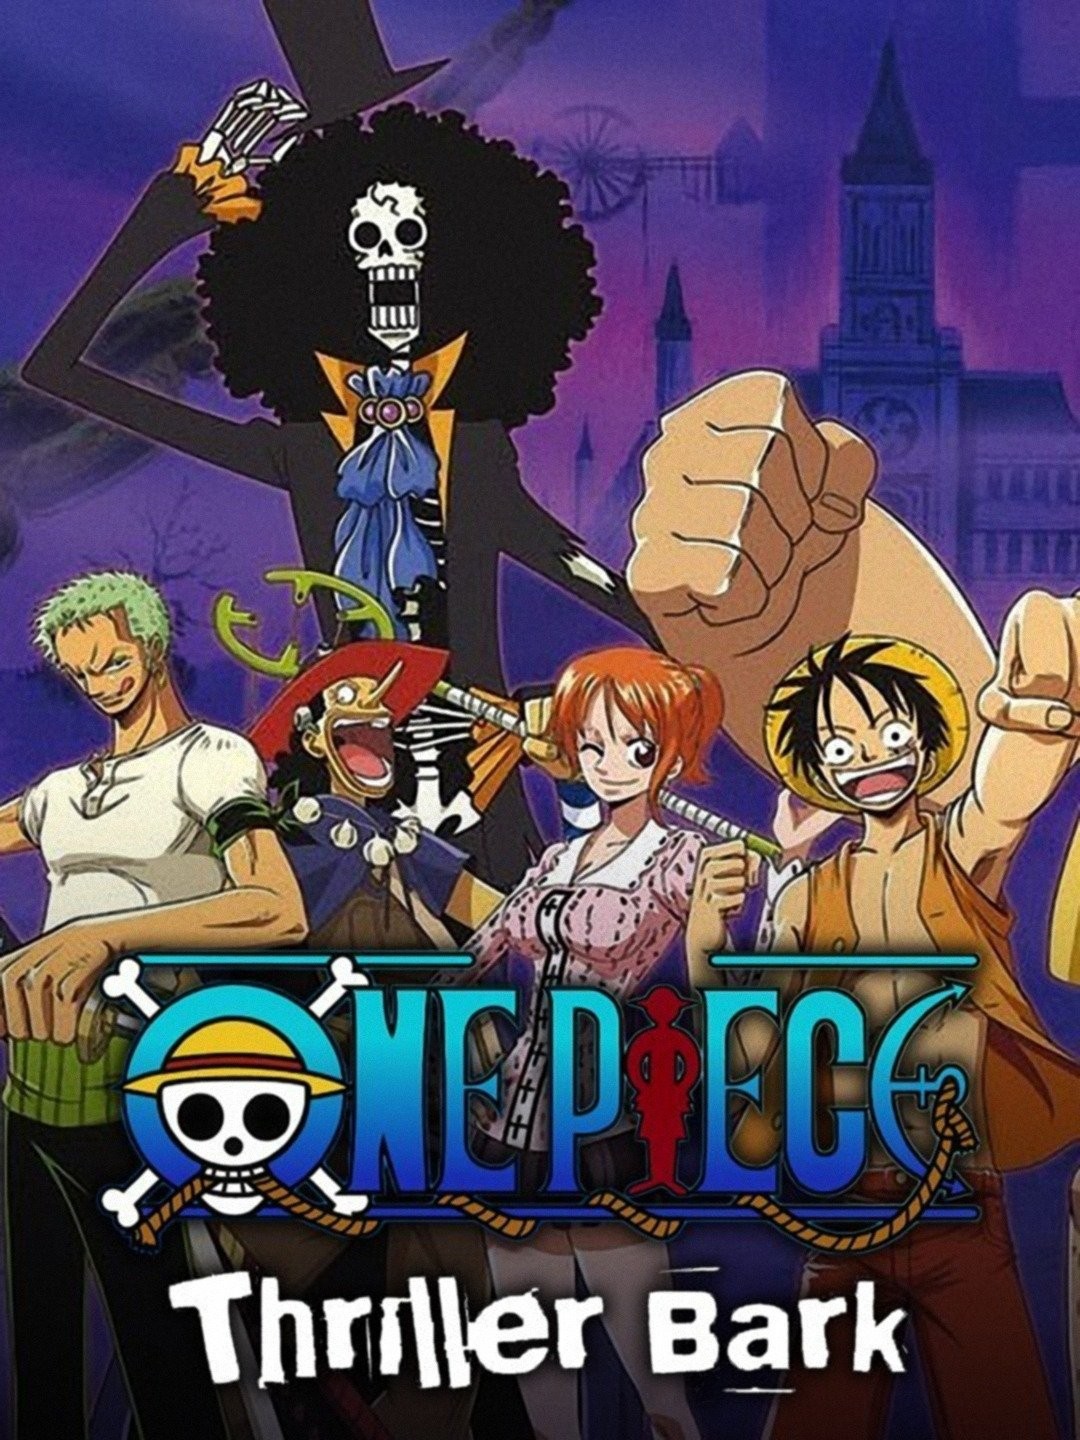 One Piece S28E13 : résumé